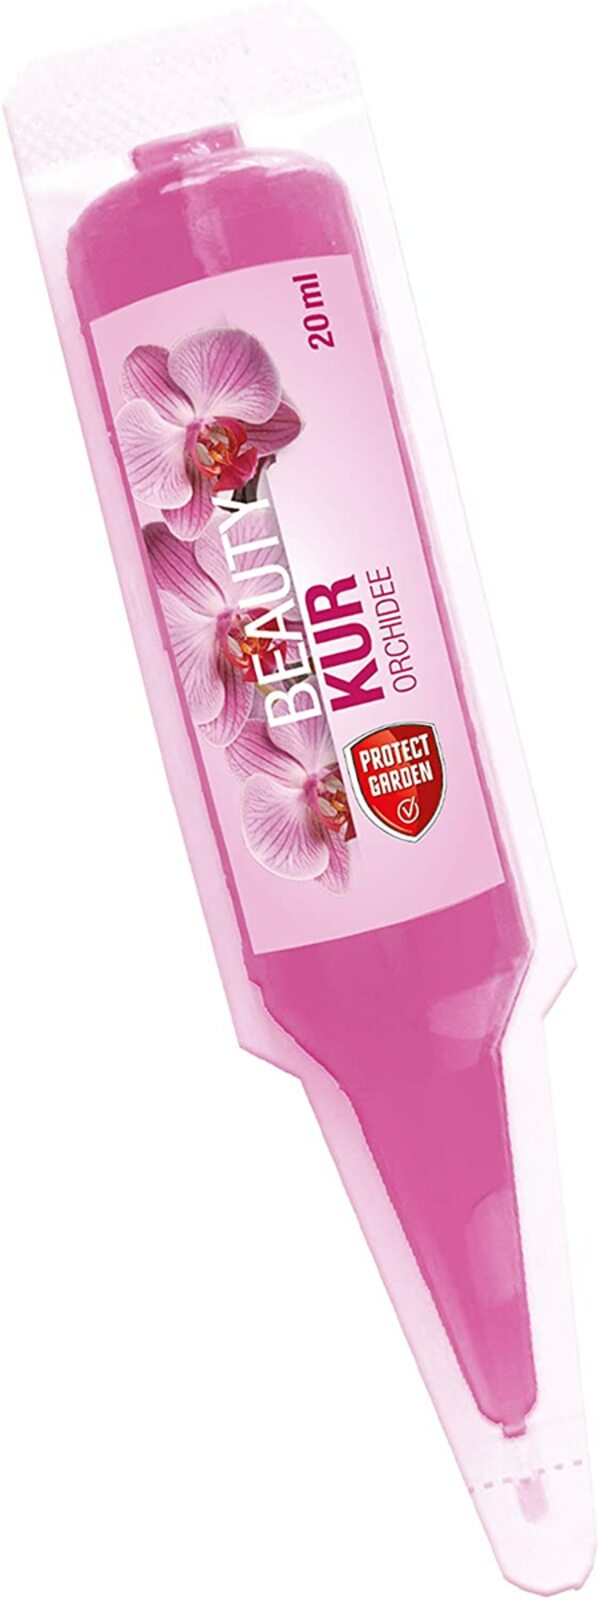 Bild 1 von PROTECT GARDEN Beautykur Orchideendünger, Pink, 20 ml